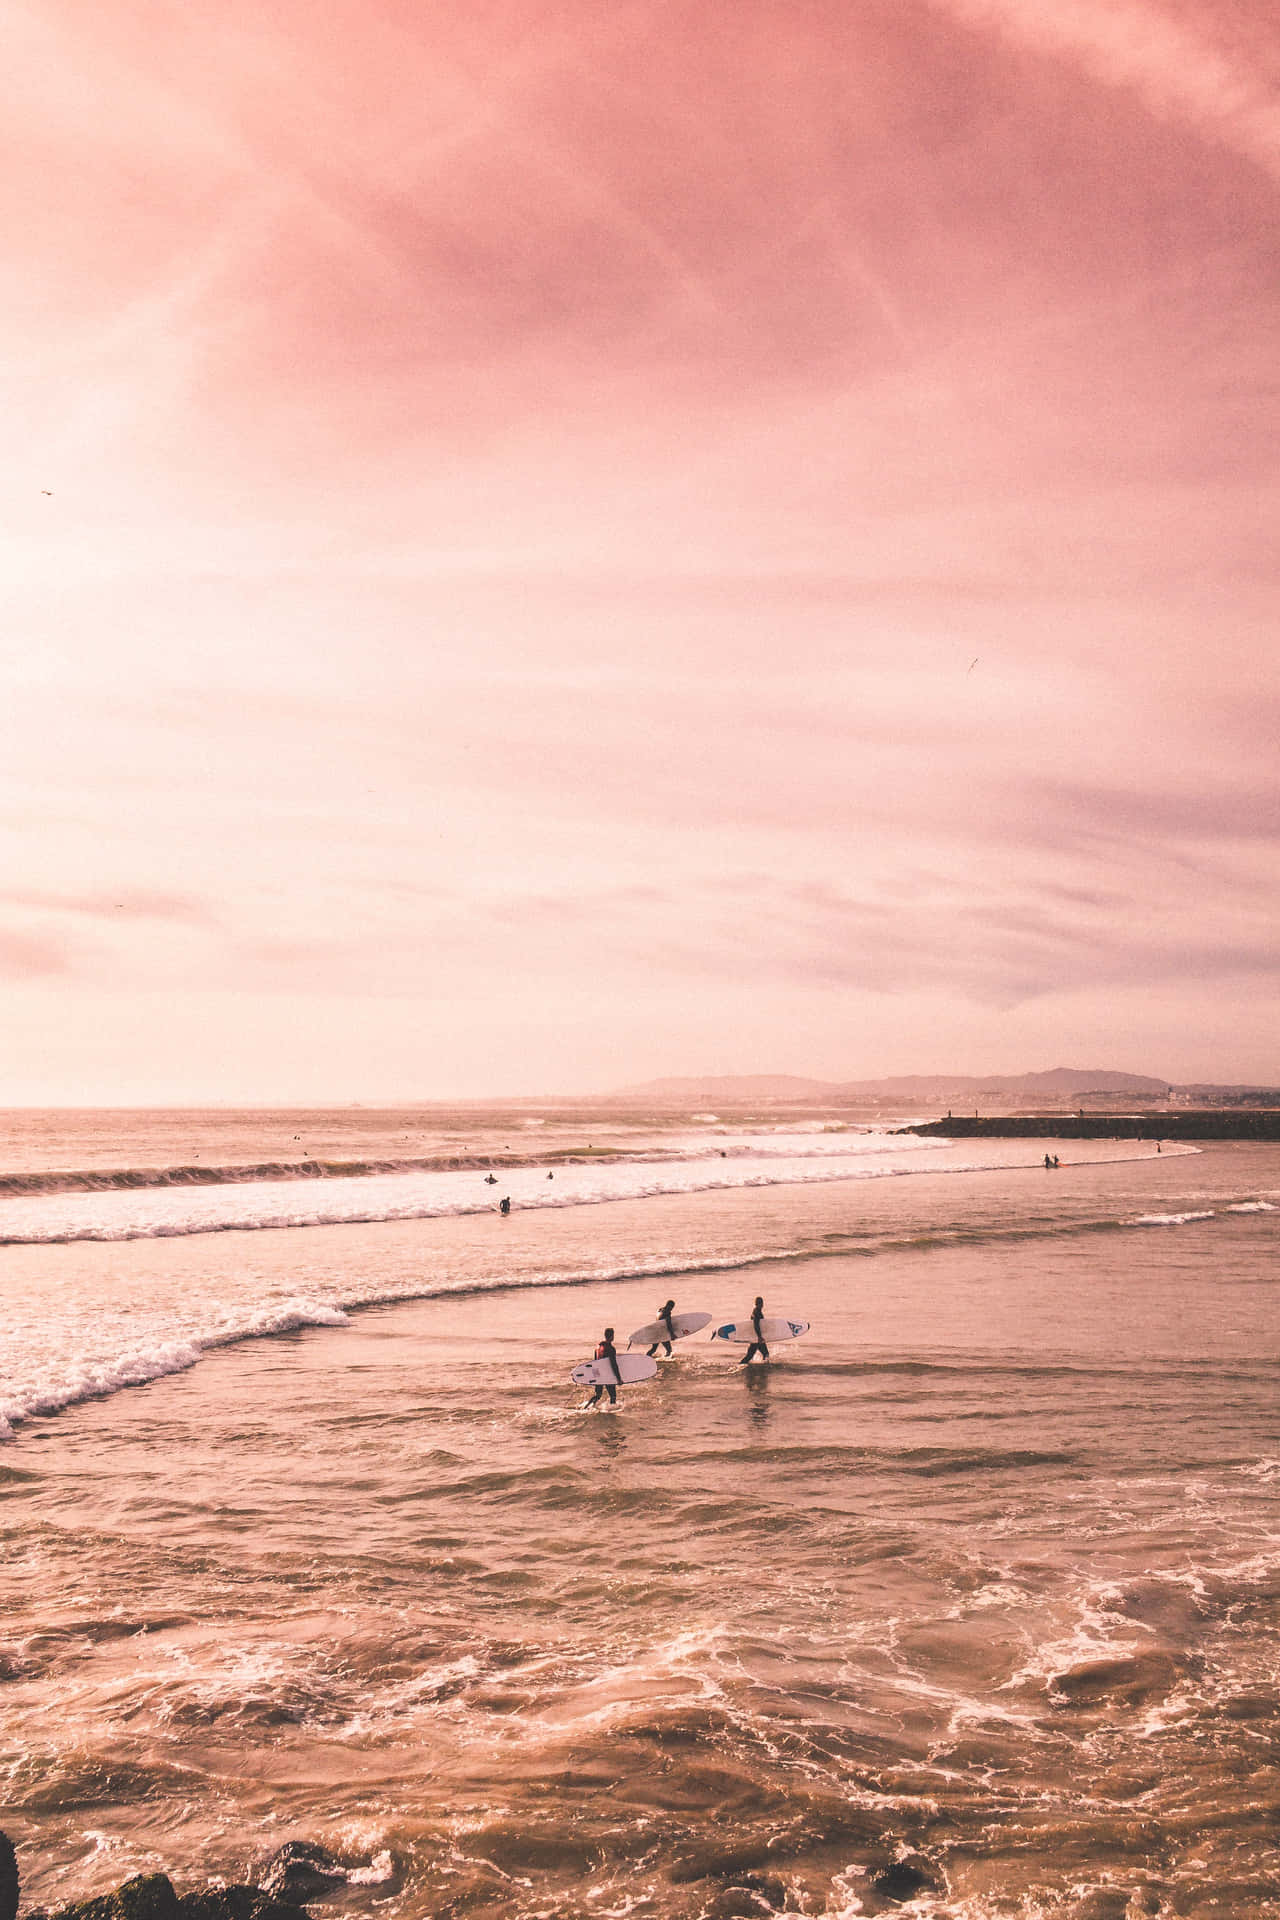 Einegruppe Von Menschen Surft Auf Dem Ozean. Wallpaper